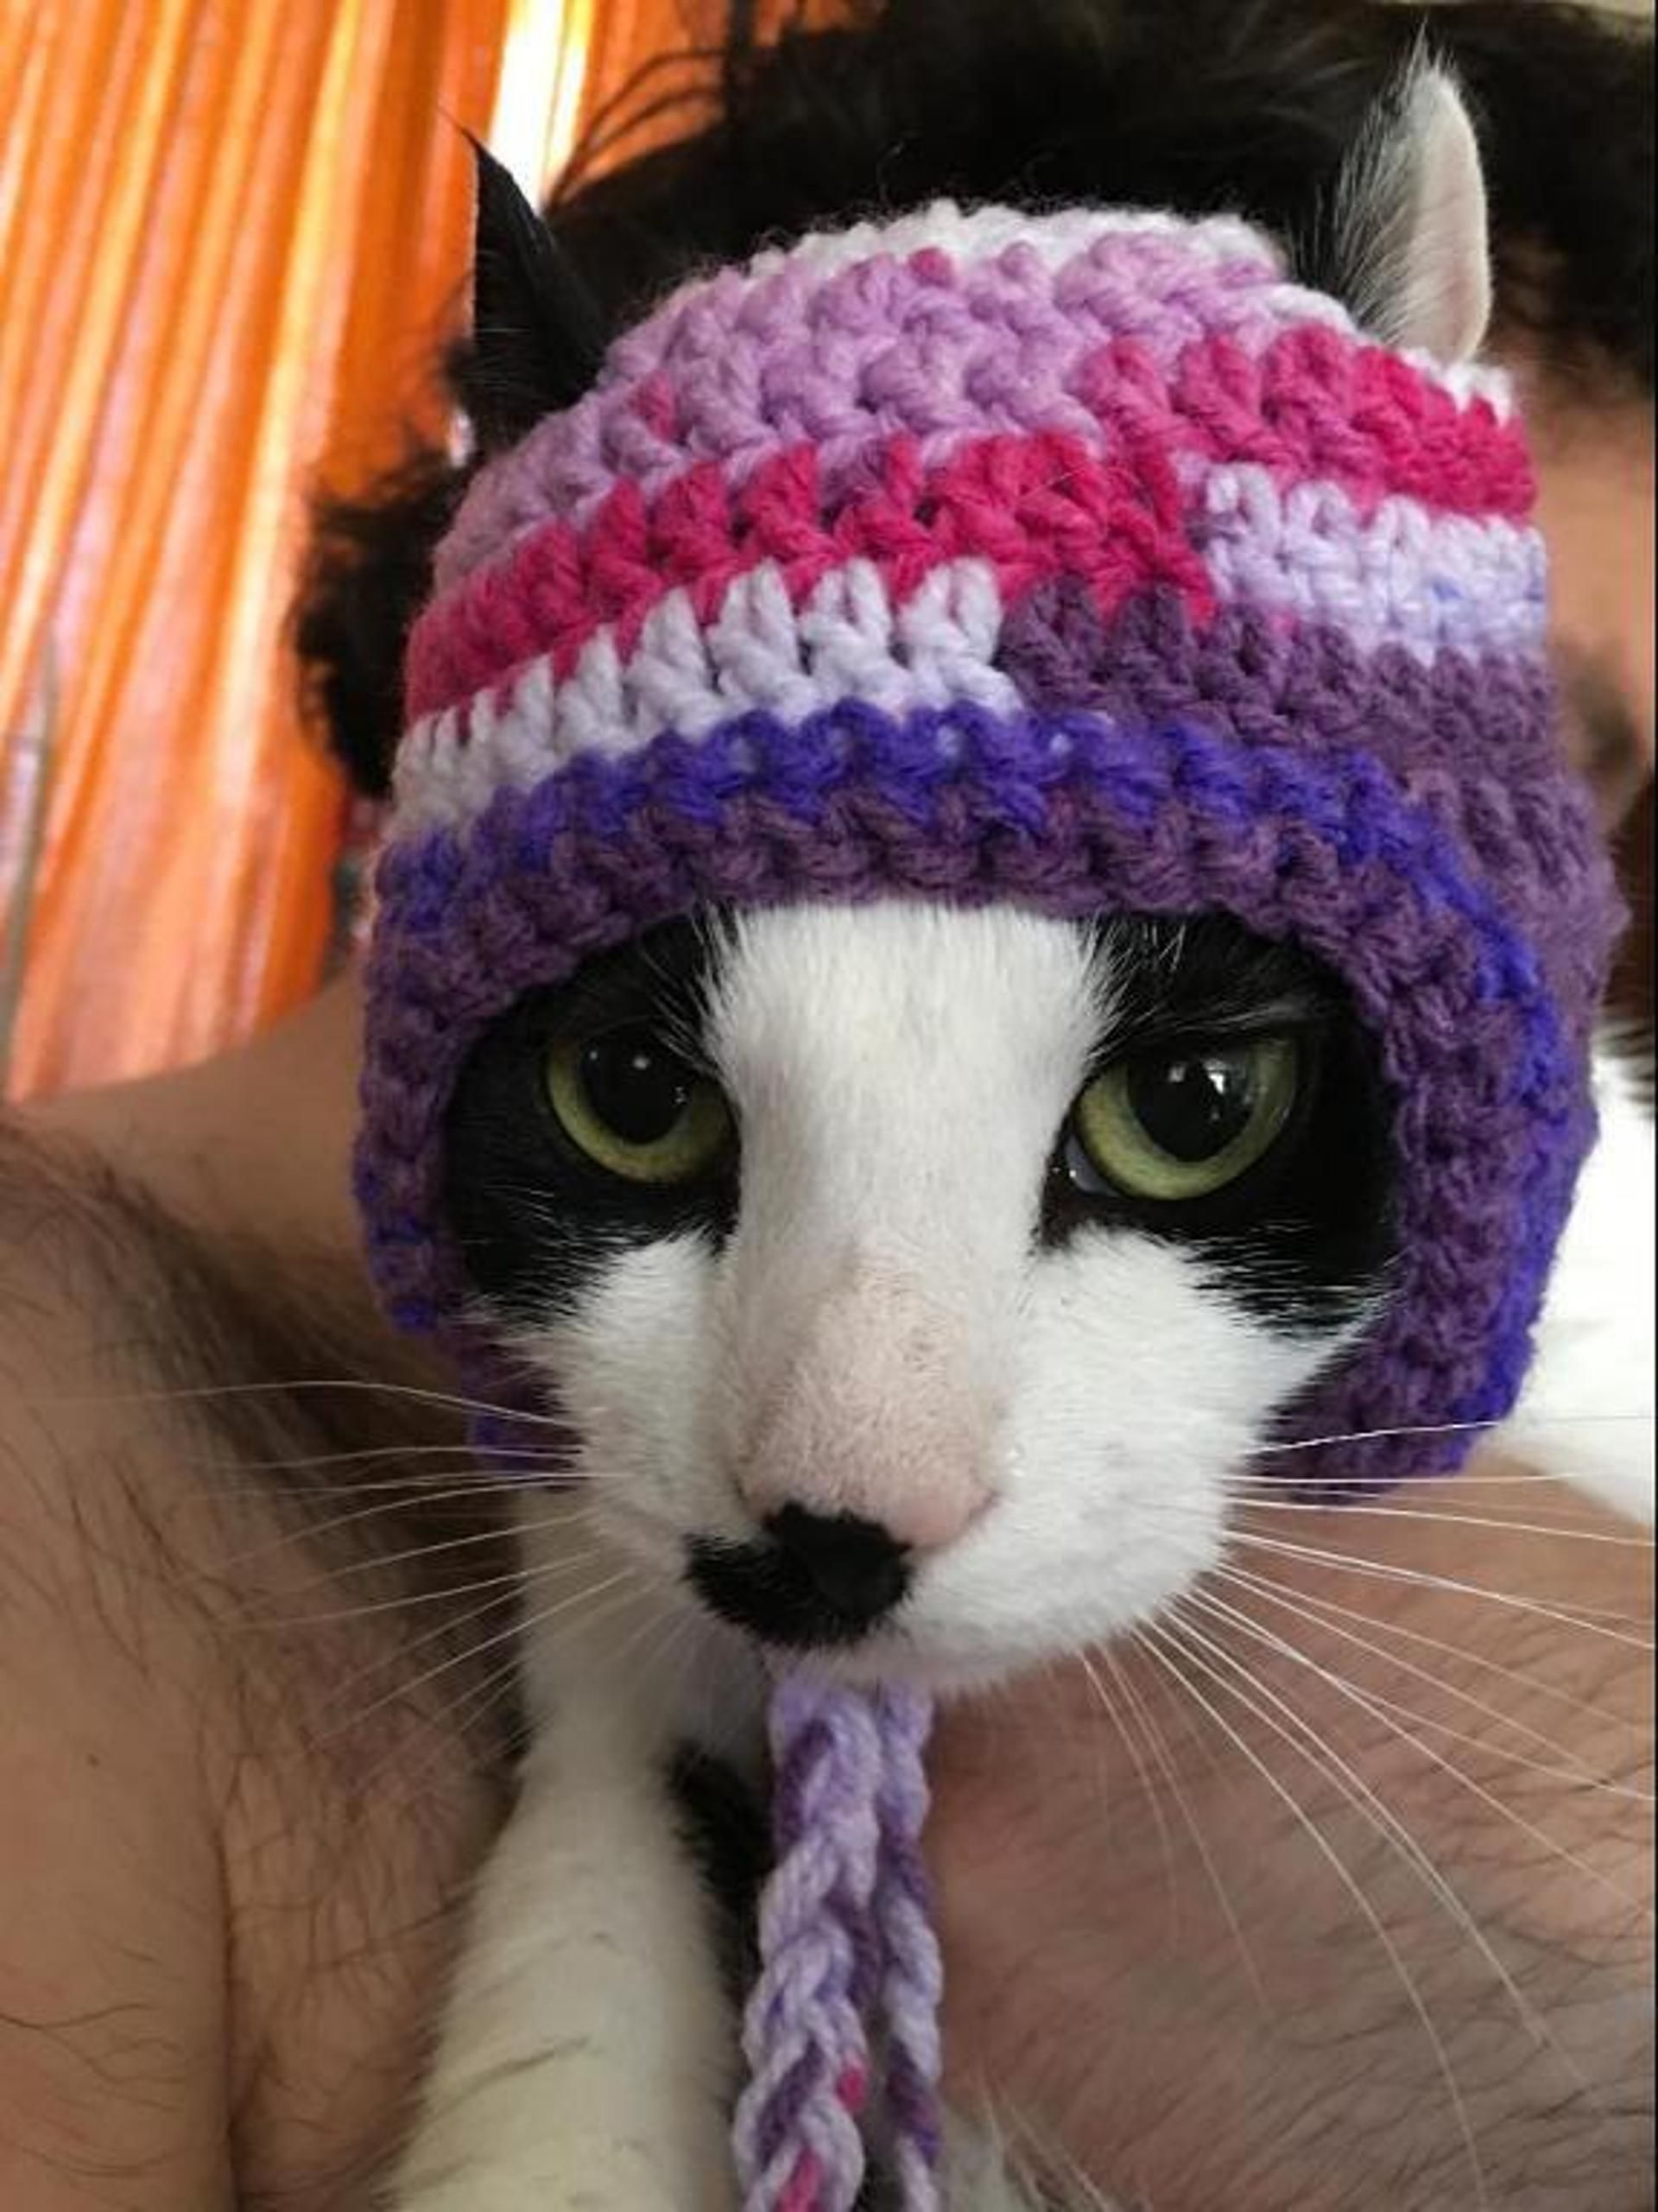 Crochet Cat Hat Pattern Crochet Hats For Cats 7 Crochet Patterns For Cat Hats Crochet